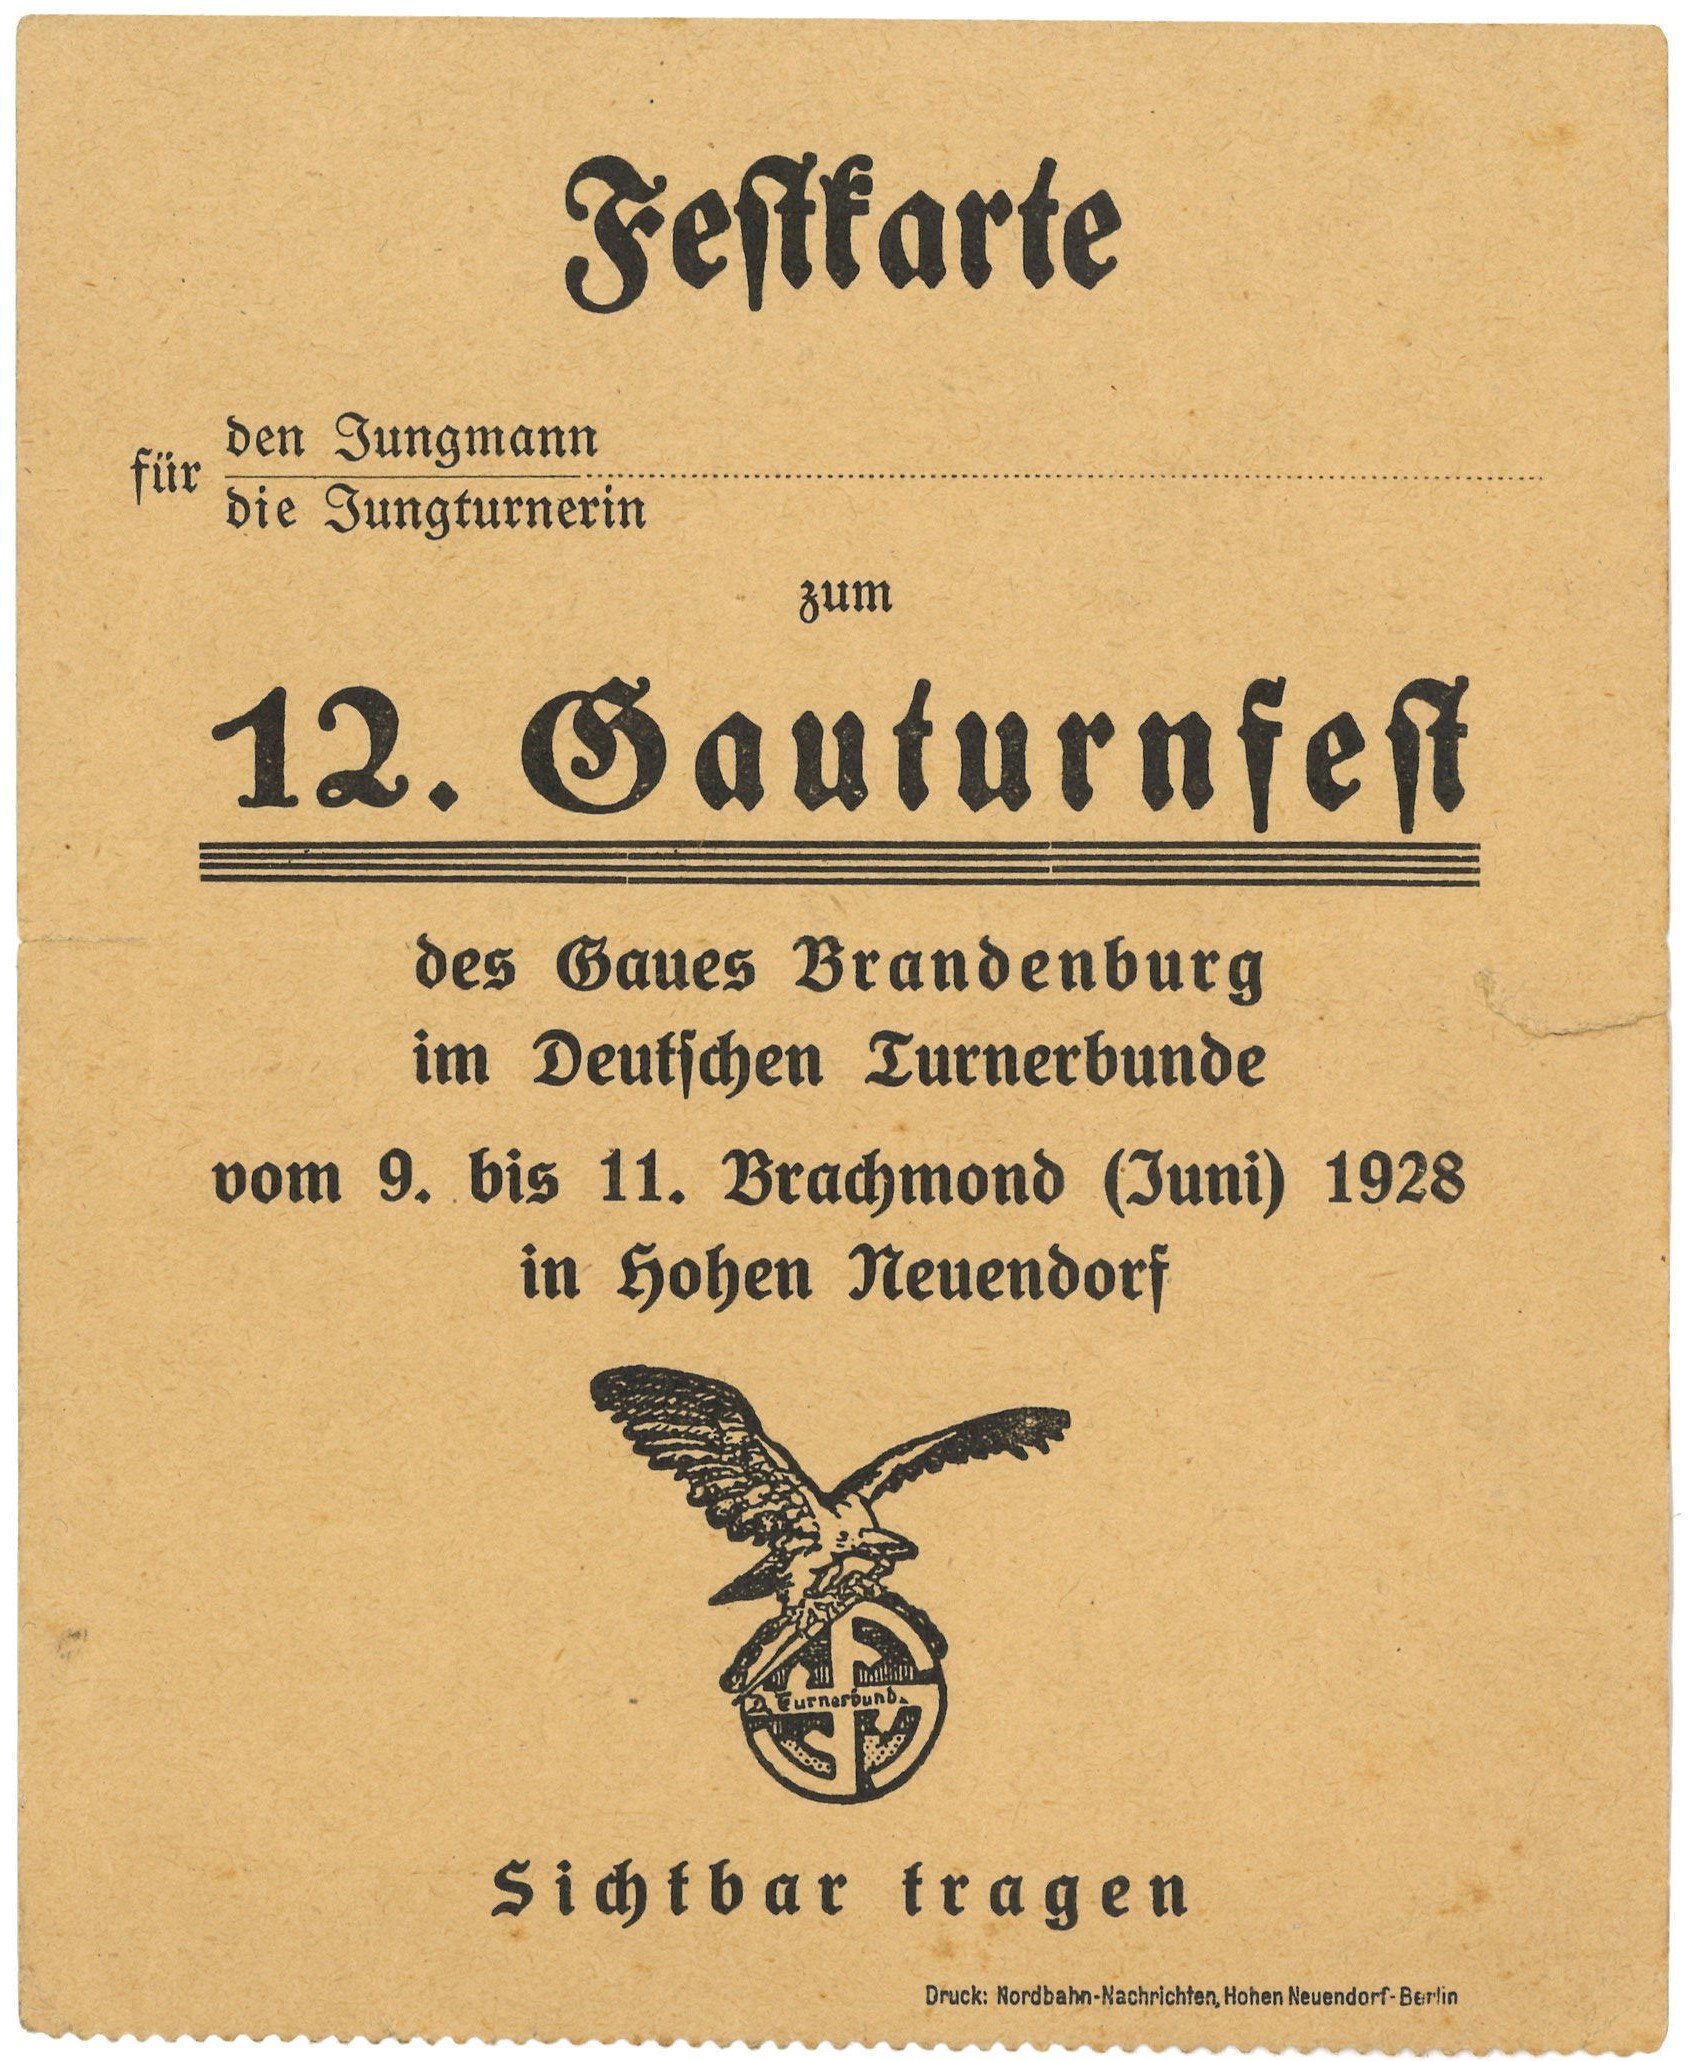 Hohen Neuendorf, 12. Gauturnfest 1928: Festkarte (Landesgeschichtliche Vereinigung für die Mark Brandenburg e.V., Archiv CC BY)